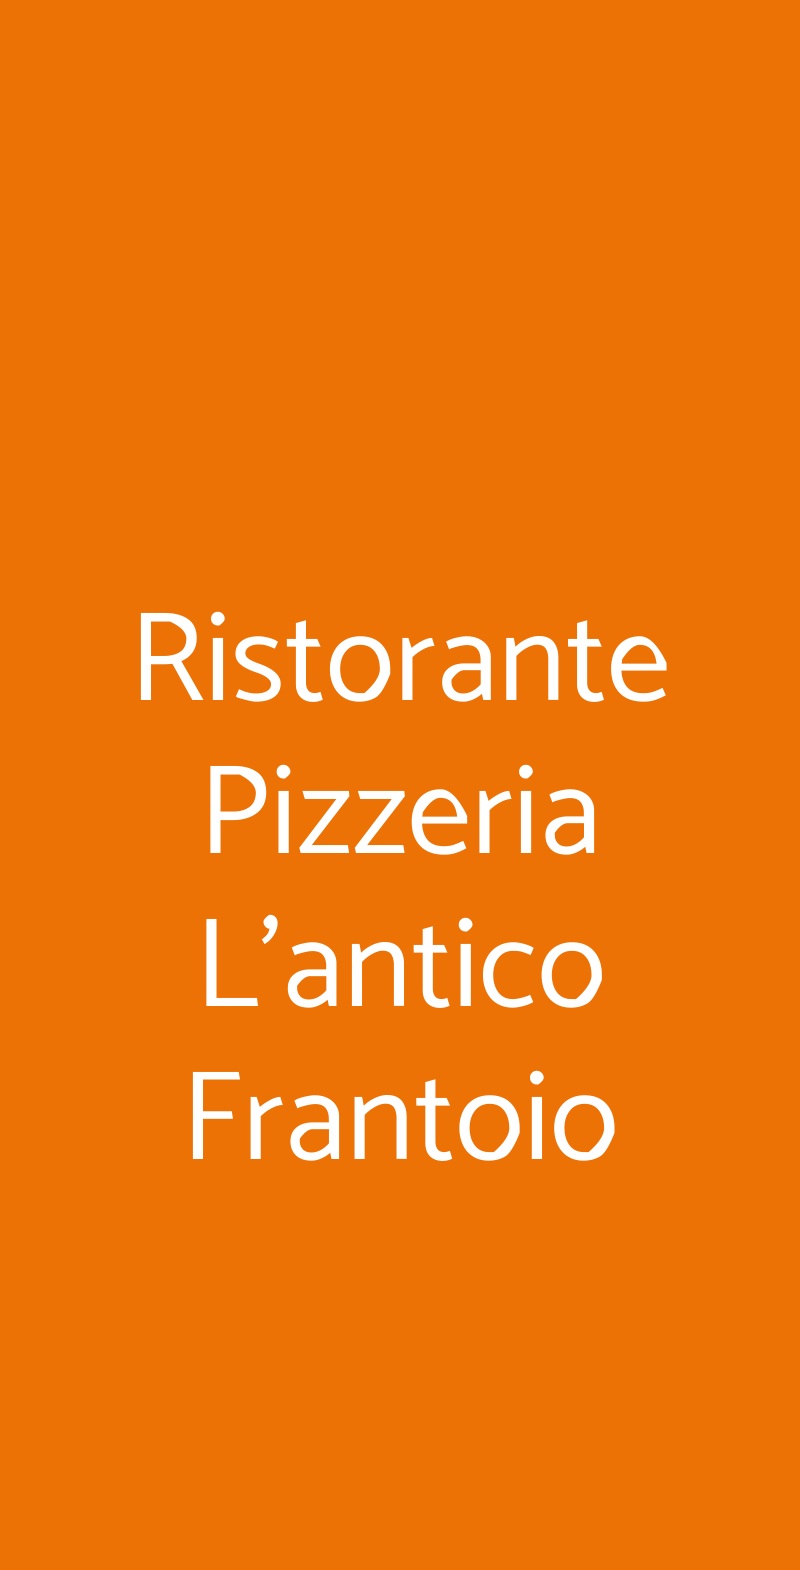 Ristorante Pizzeria L'antico Frantoio Mesagne menù 1 pagina